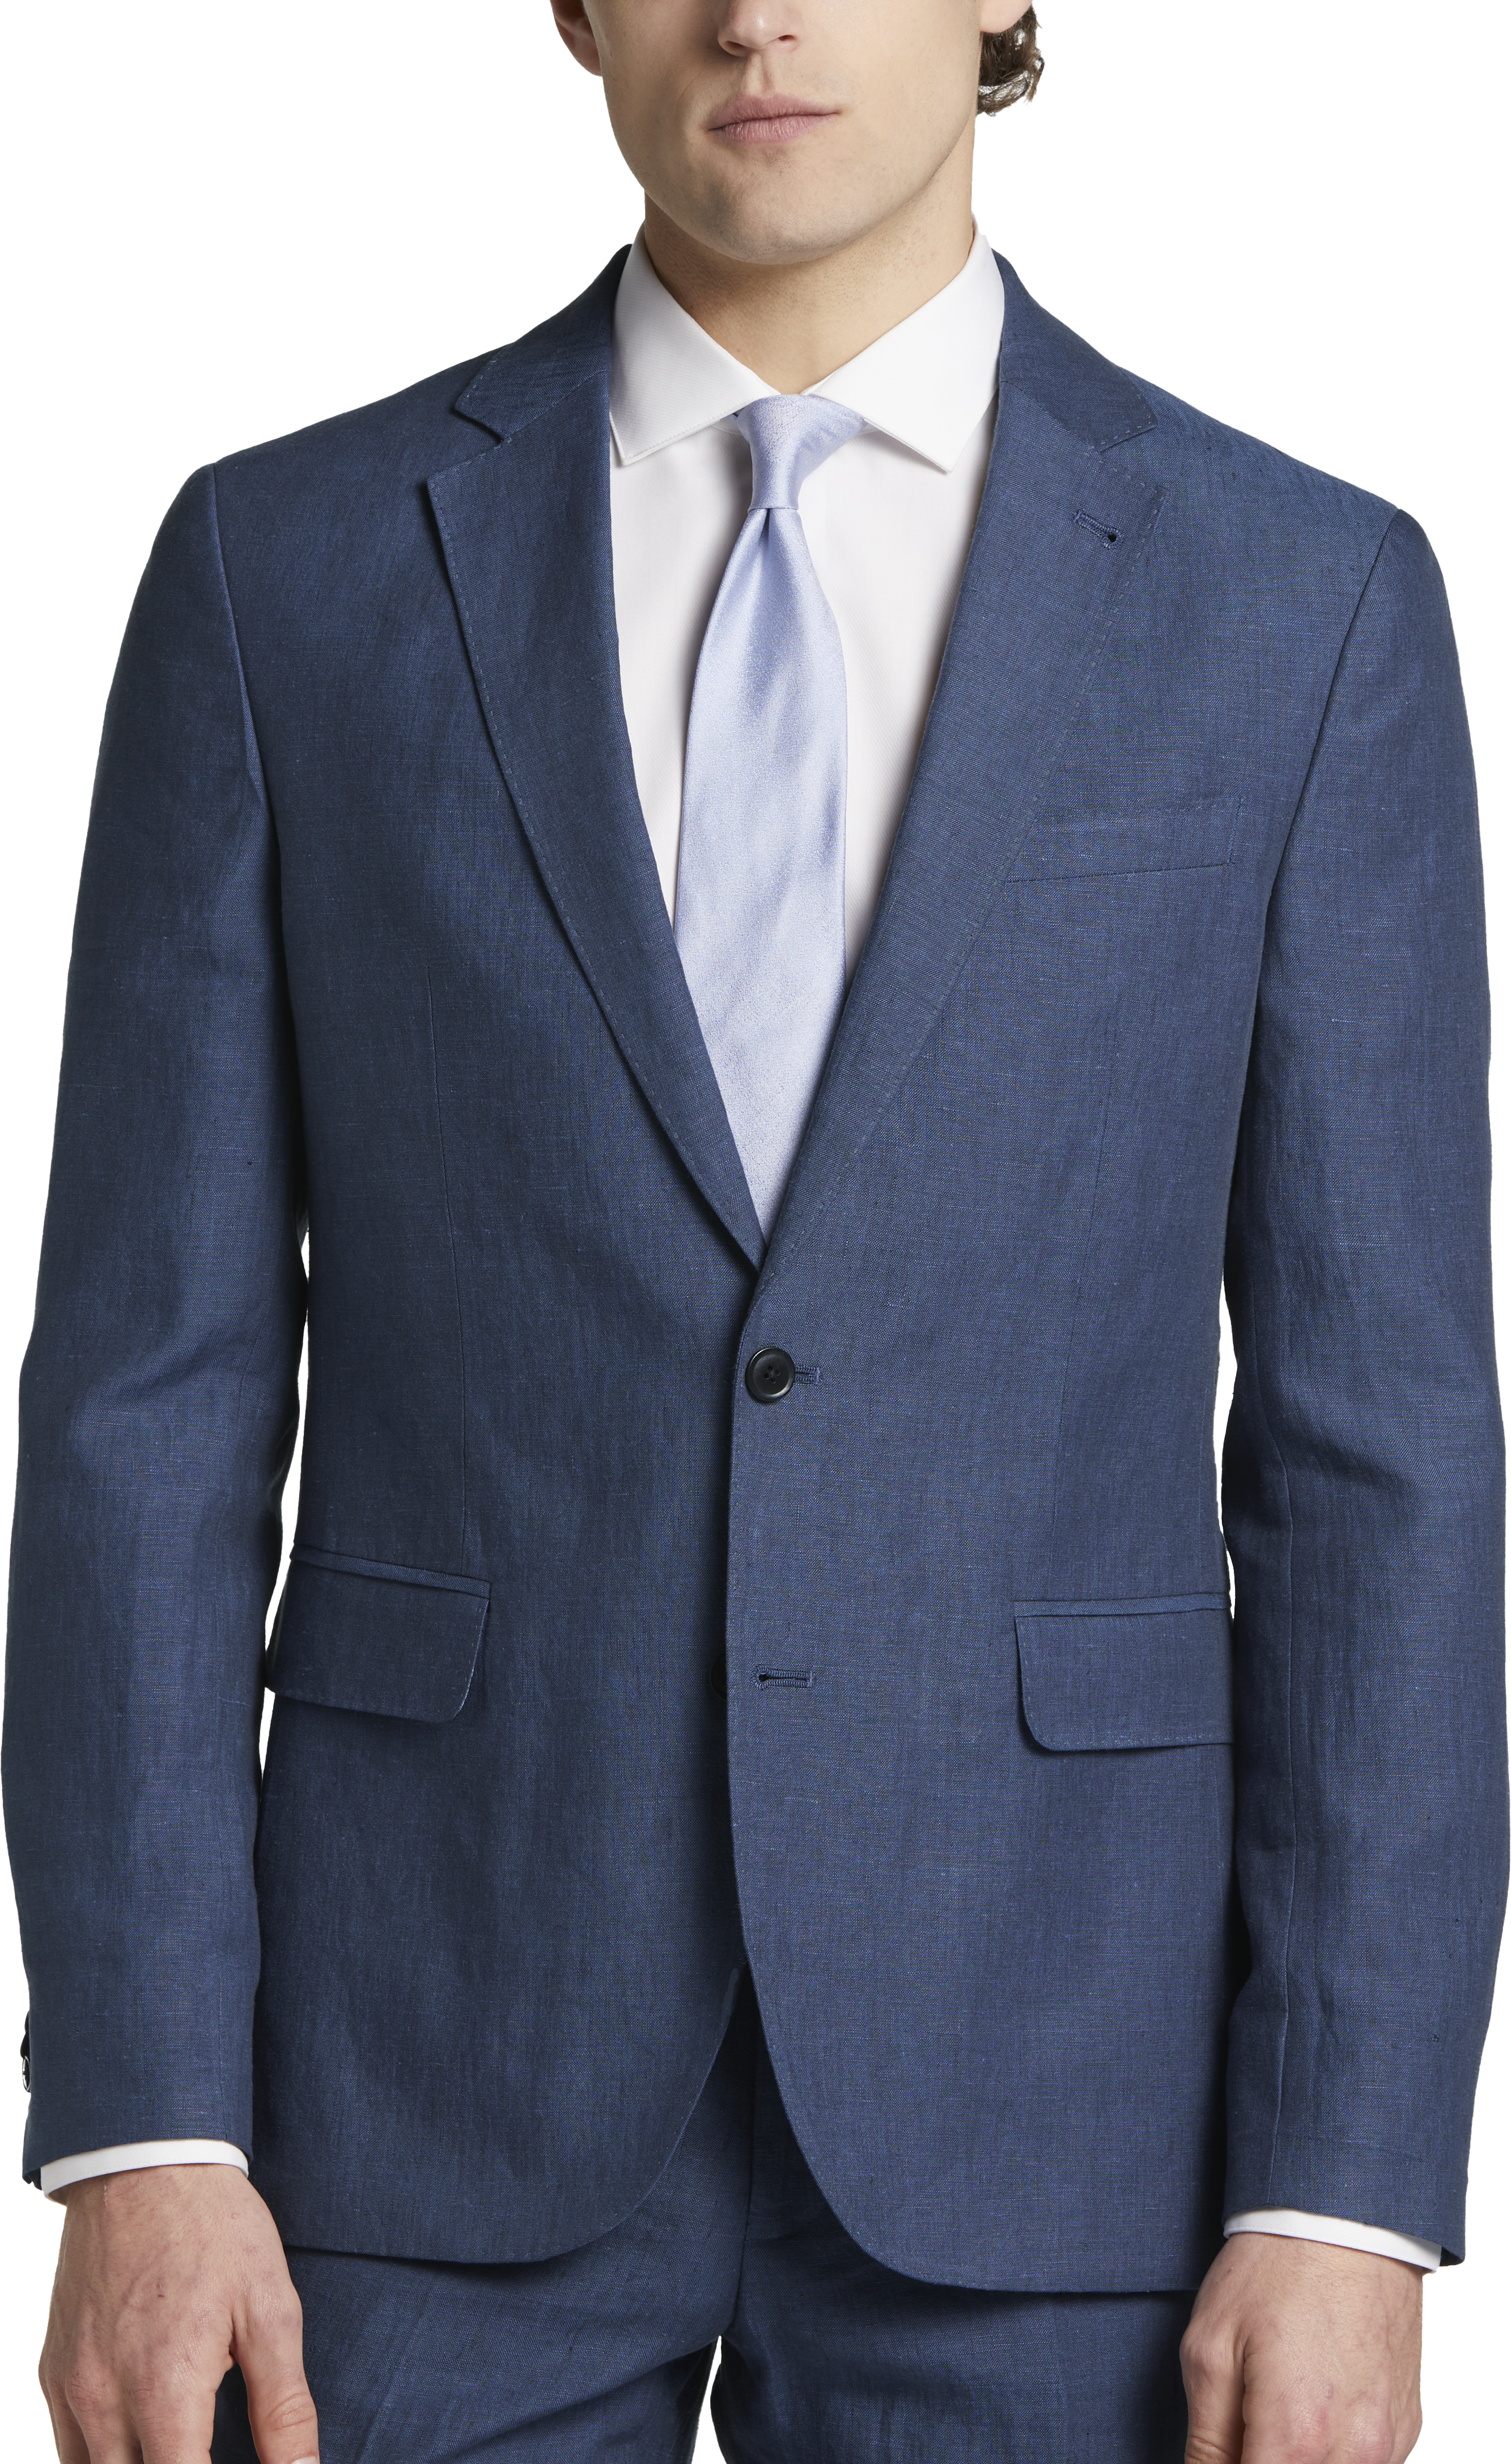 JOE Joseph Abboud Linen Slim Fit Suit Separates, Navy Blue